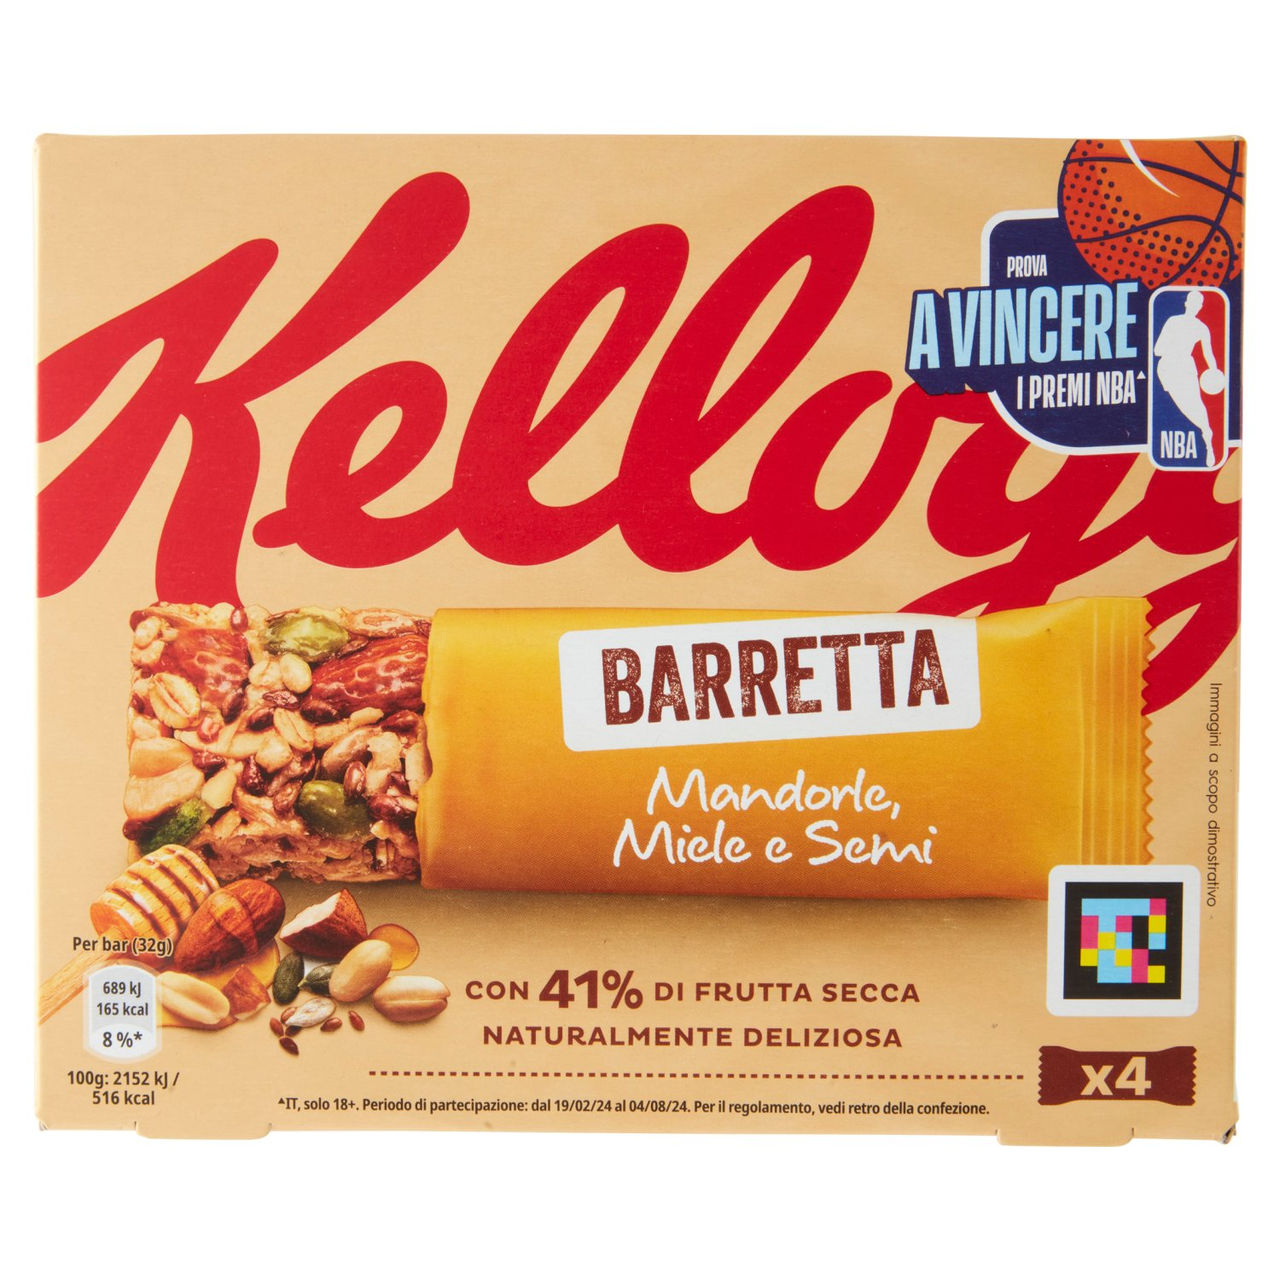 Kellogg's Barretta Mandorle, Miele e Semi 4 x 32 g